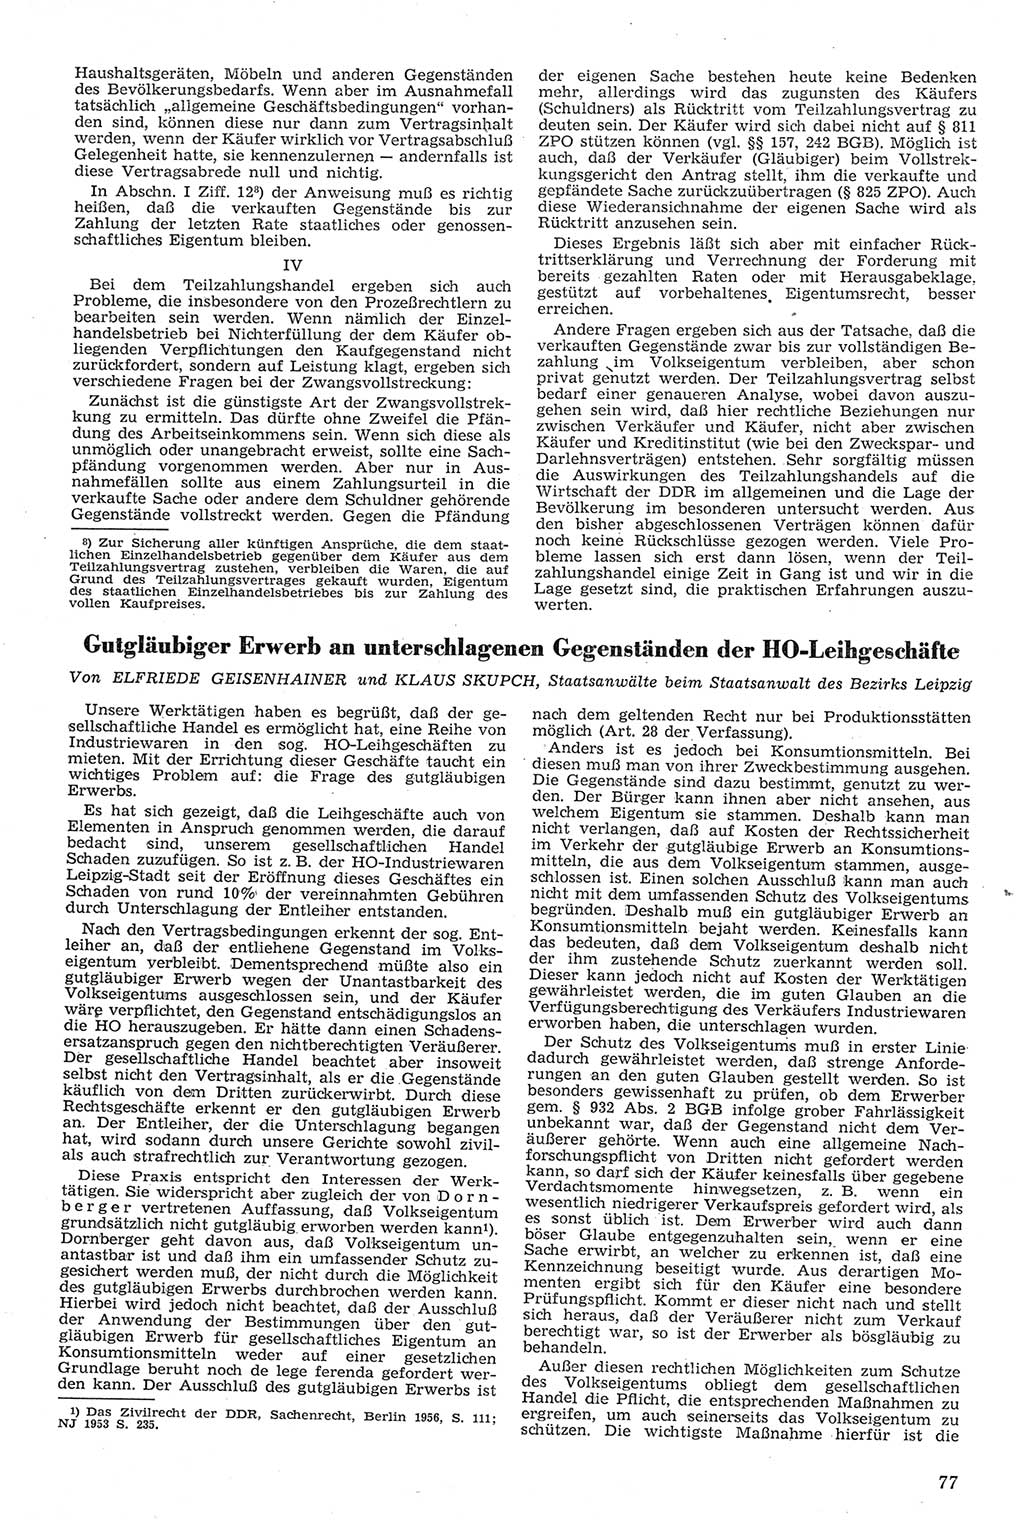 Neue Justiz (NJ), Zeitschrift für Recht und Rechtswissenschaft [Deutsche Demokratische Republik (DDR)], 11. Jahrgang 1957, Seite 77 (NJ DDR 1957, S. 77)